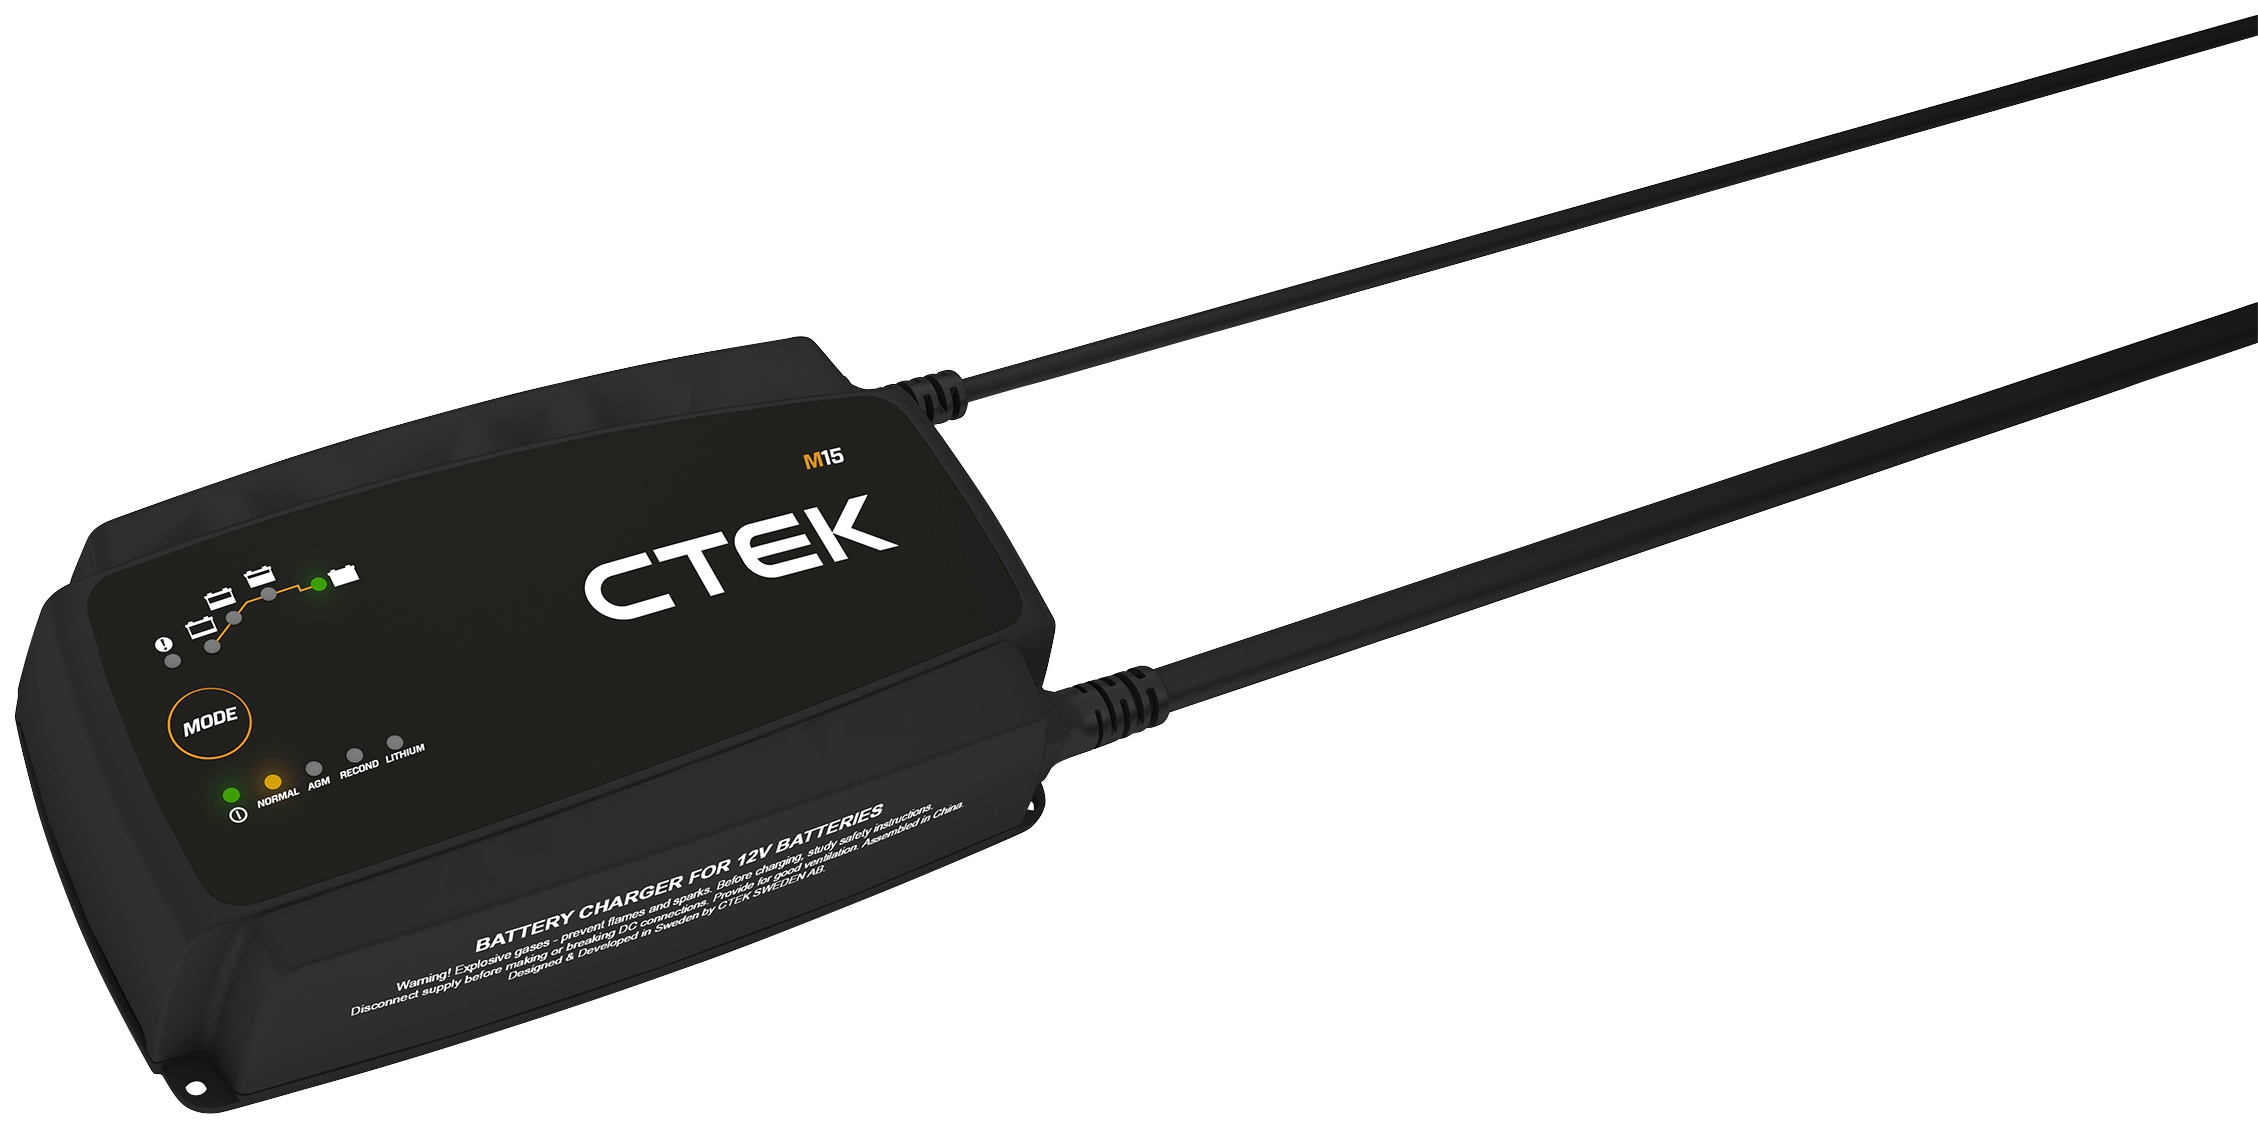 CTEK Batterie-Ladegerät »M15«, Vollautomatisch und einfach zu bedienen